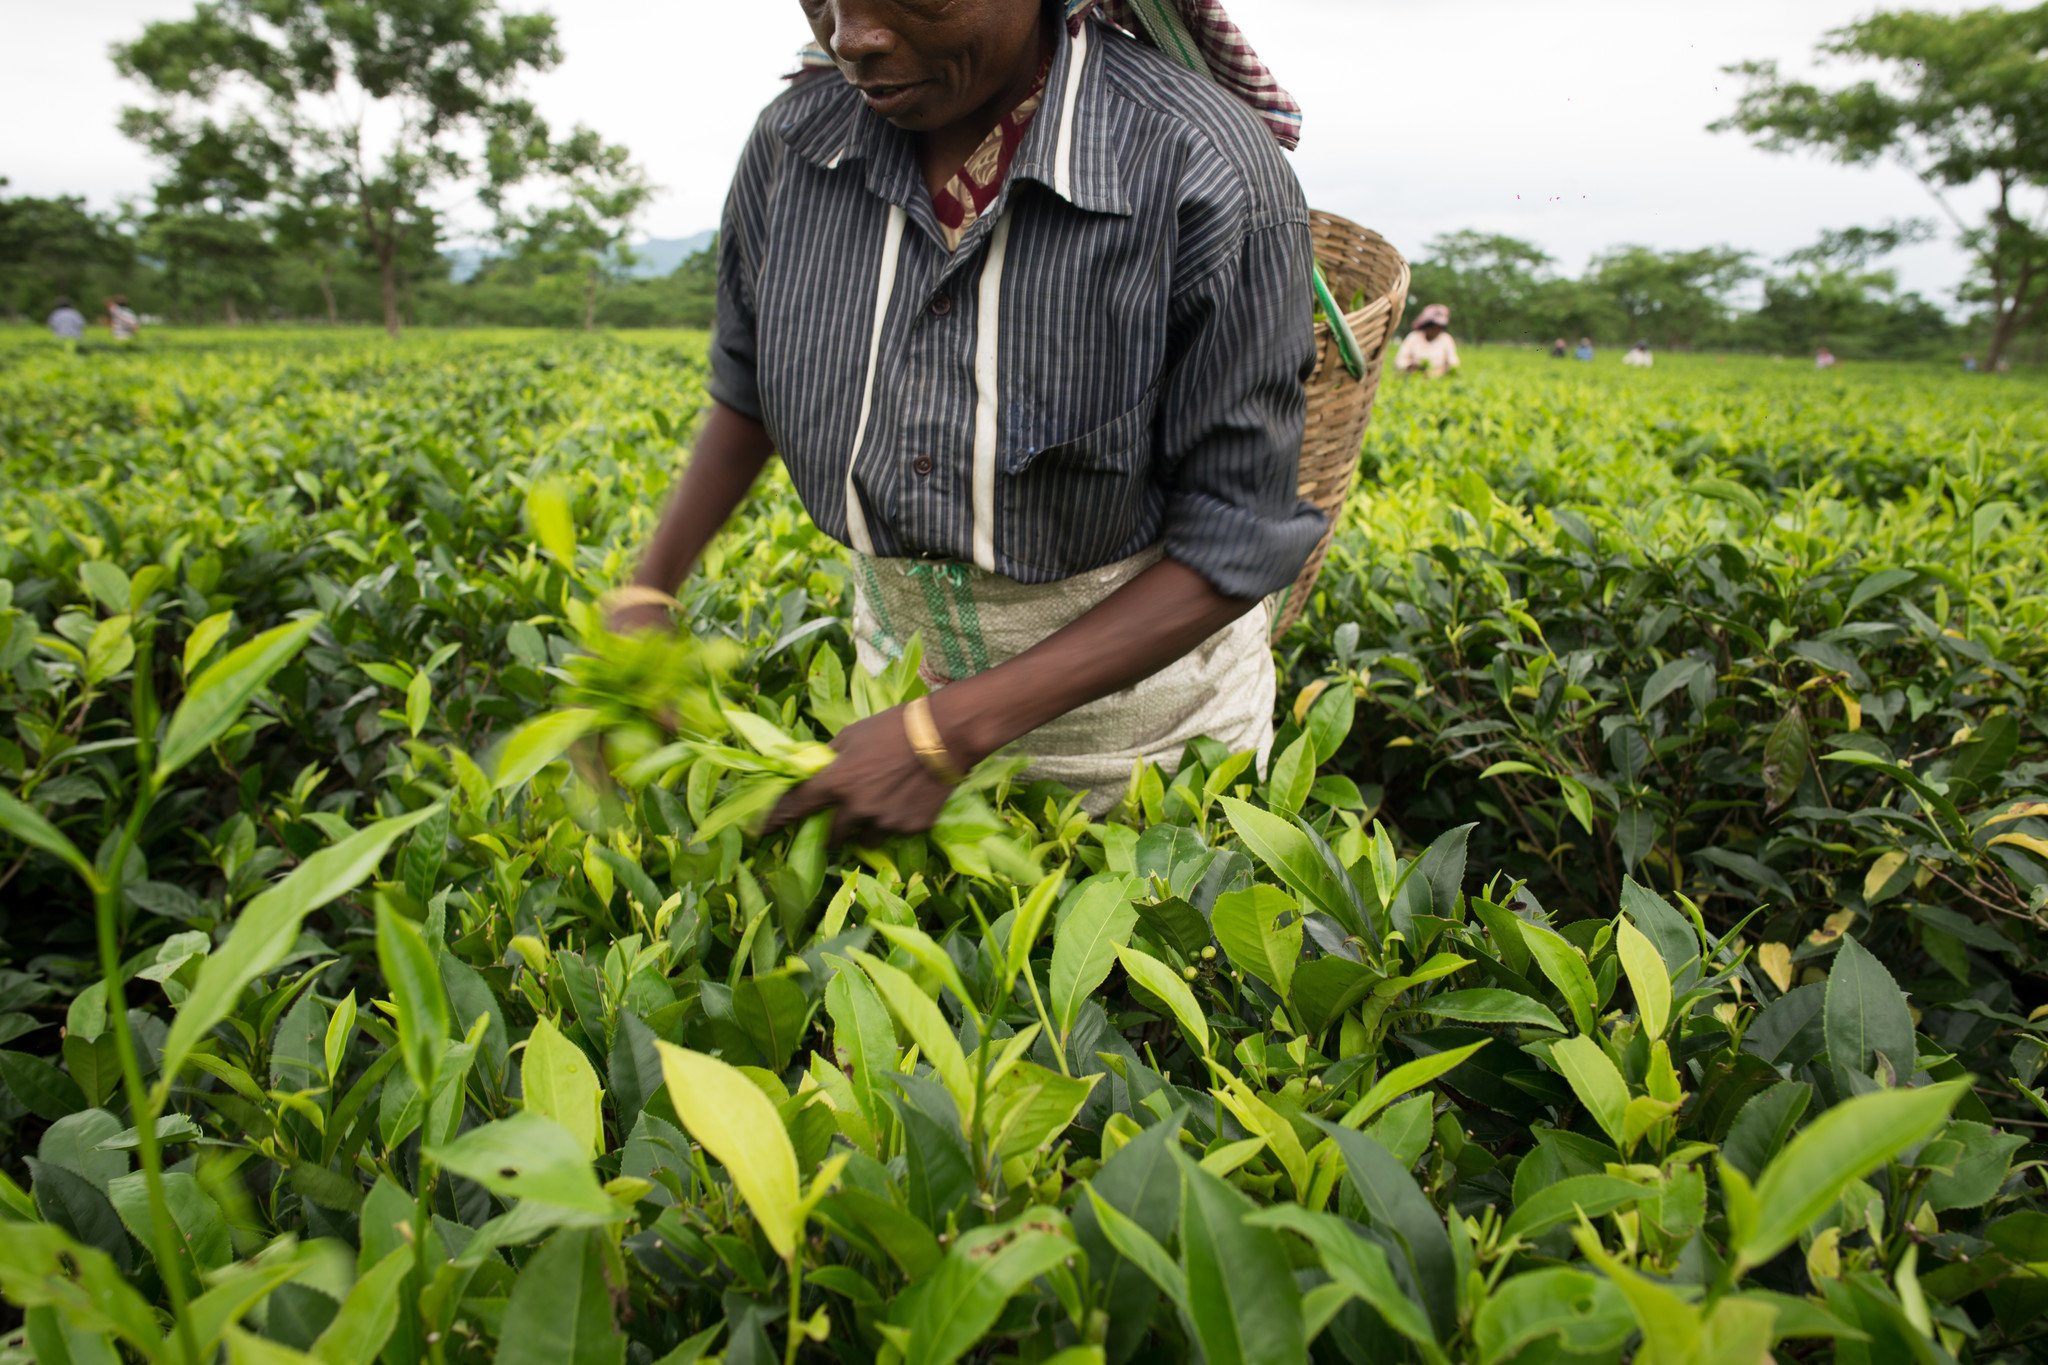 印度︰乐施会和伙伴团体访问了14个盛产茶叶的地区多名采茶工人，发现全部受访者已停工多月，当中不少人正面对粮食不足的情况，急需外界支援。